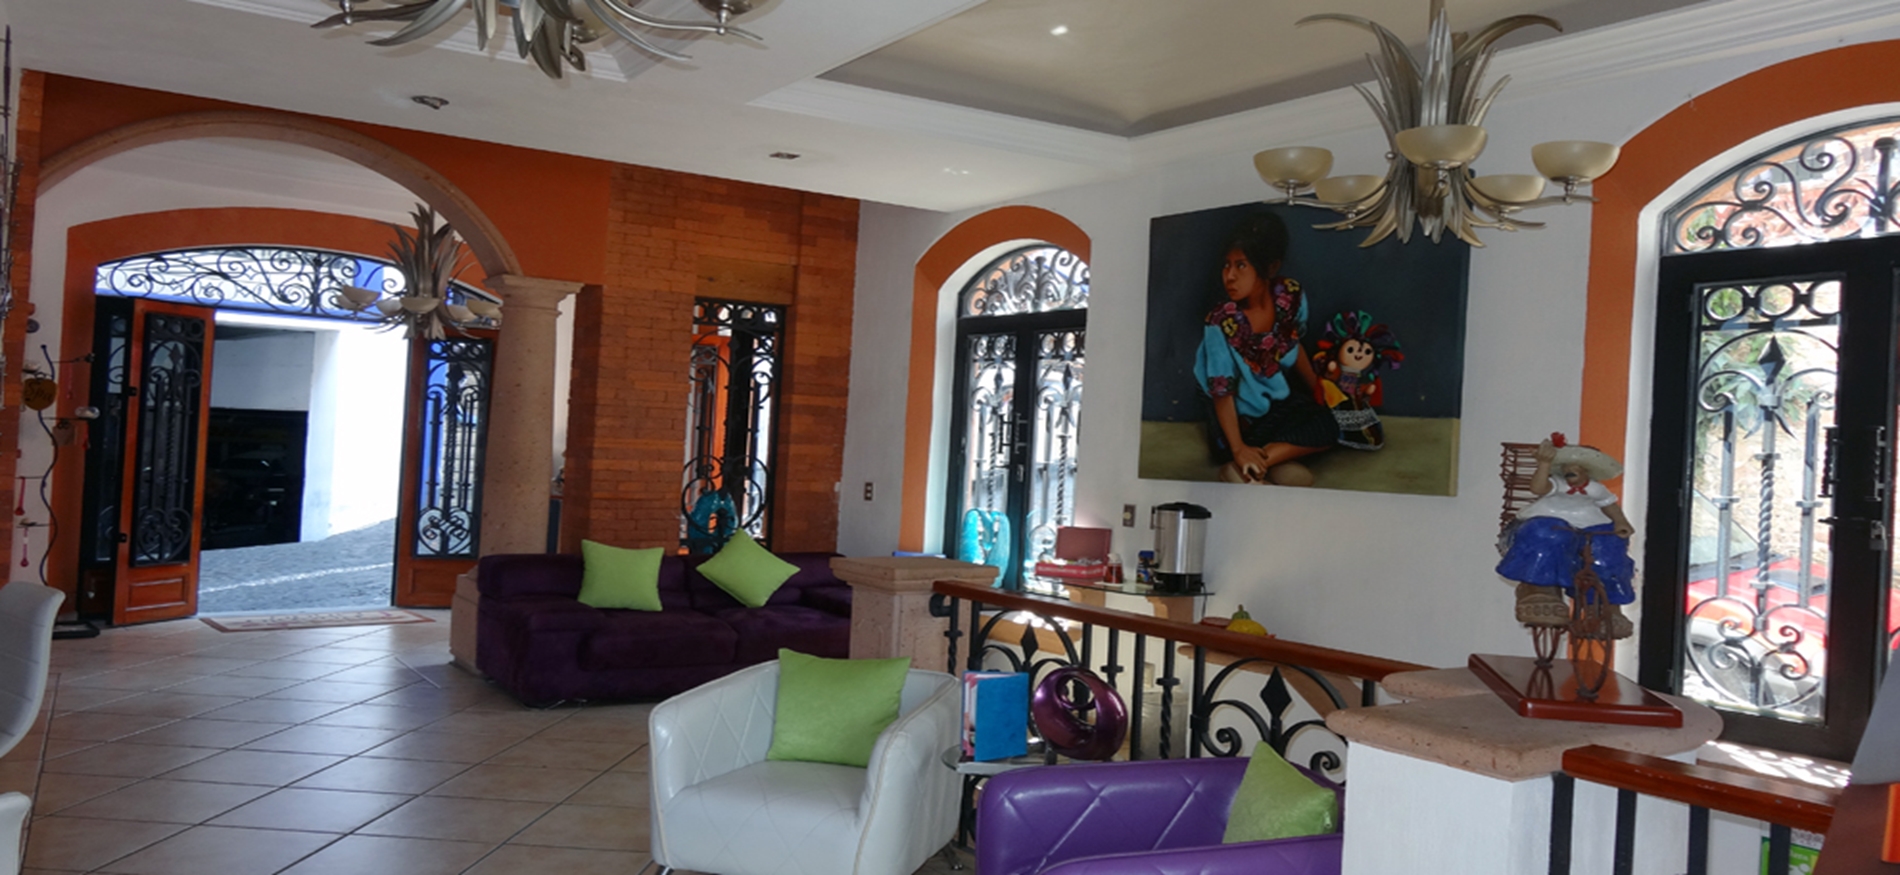 Hotel Boutique Pueblo Lindo, Taxco.